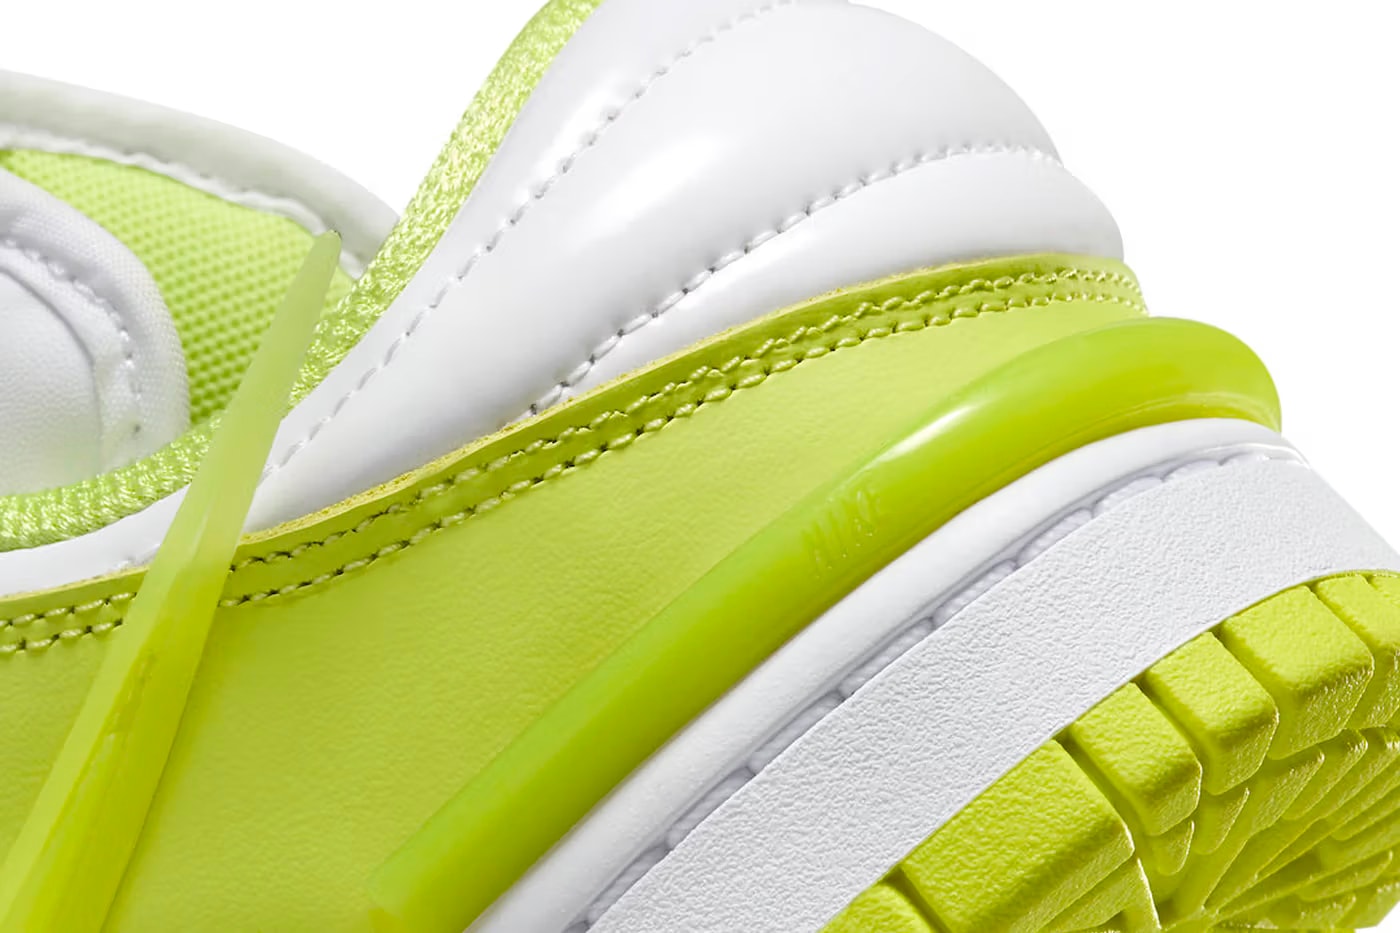 nike dunk low twist "lemon twist" sneakers footwear where to buy price info release date